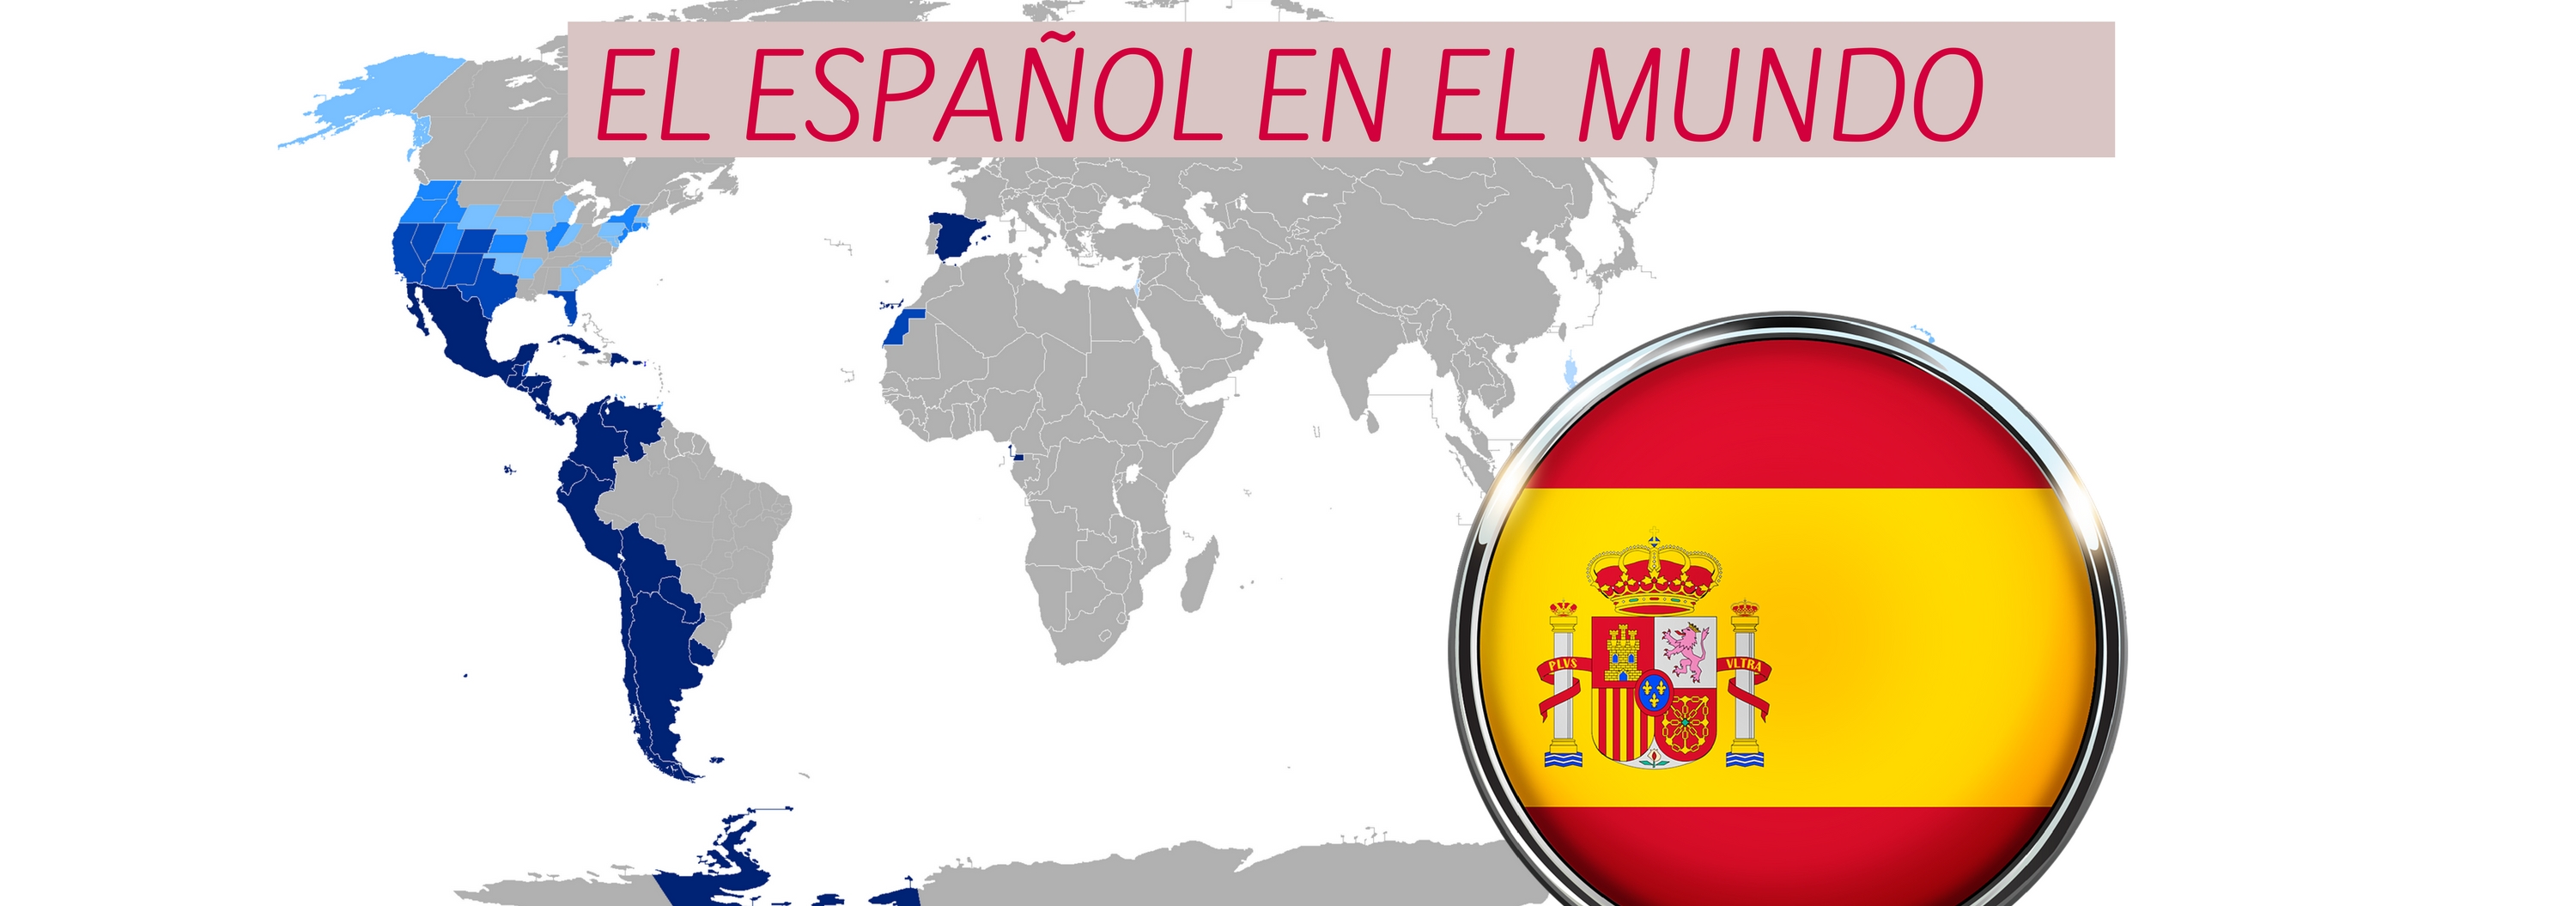 El español en el mundo; un idioma que traspasa fronteras - Marco Polo